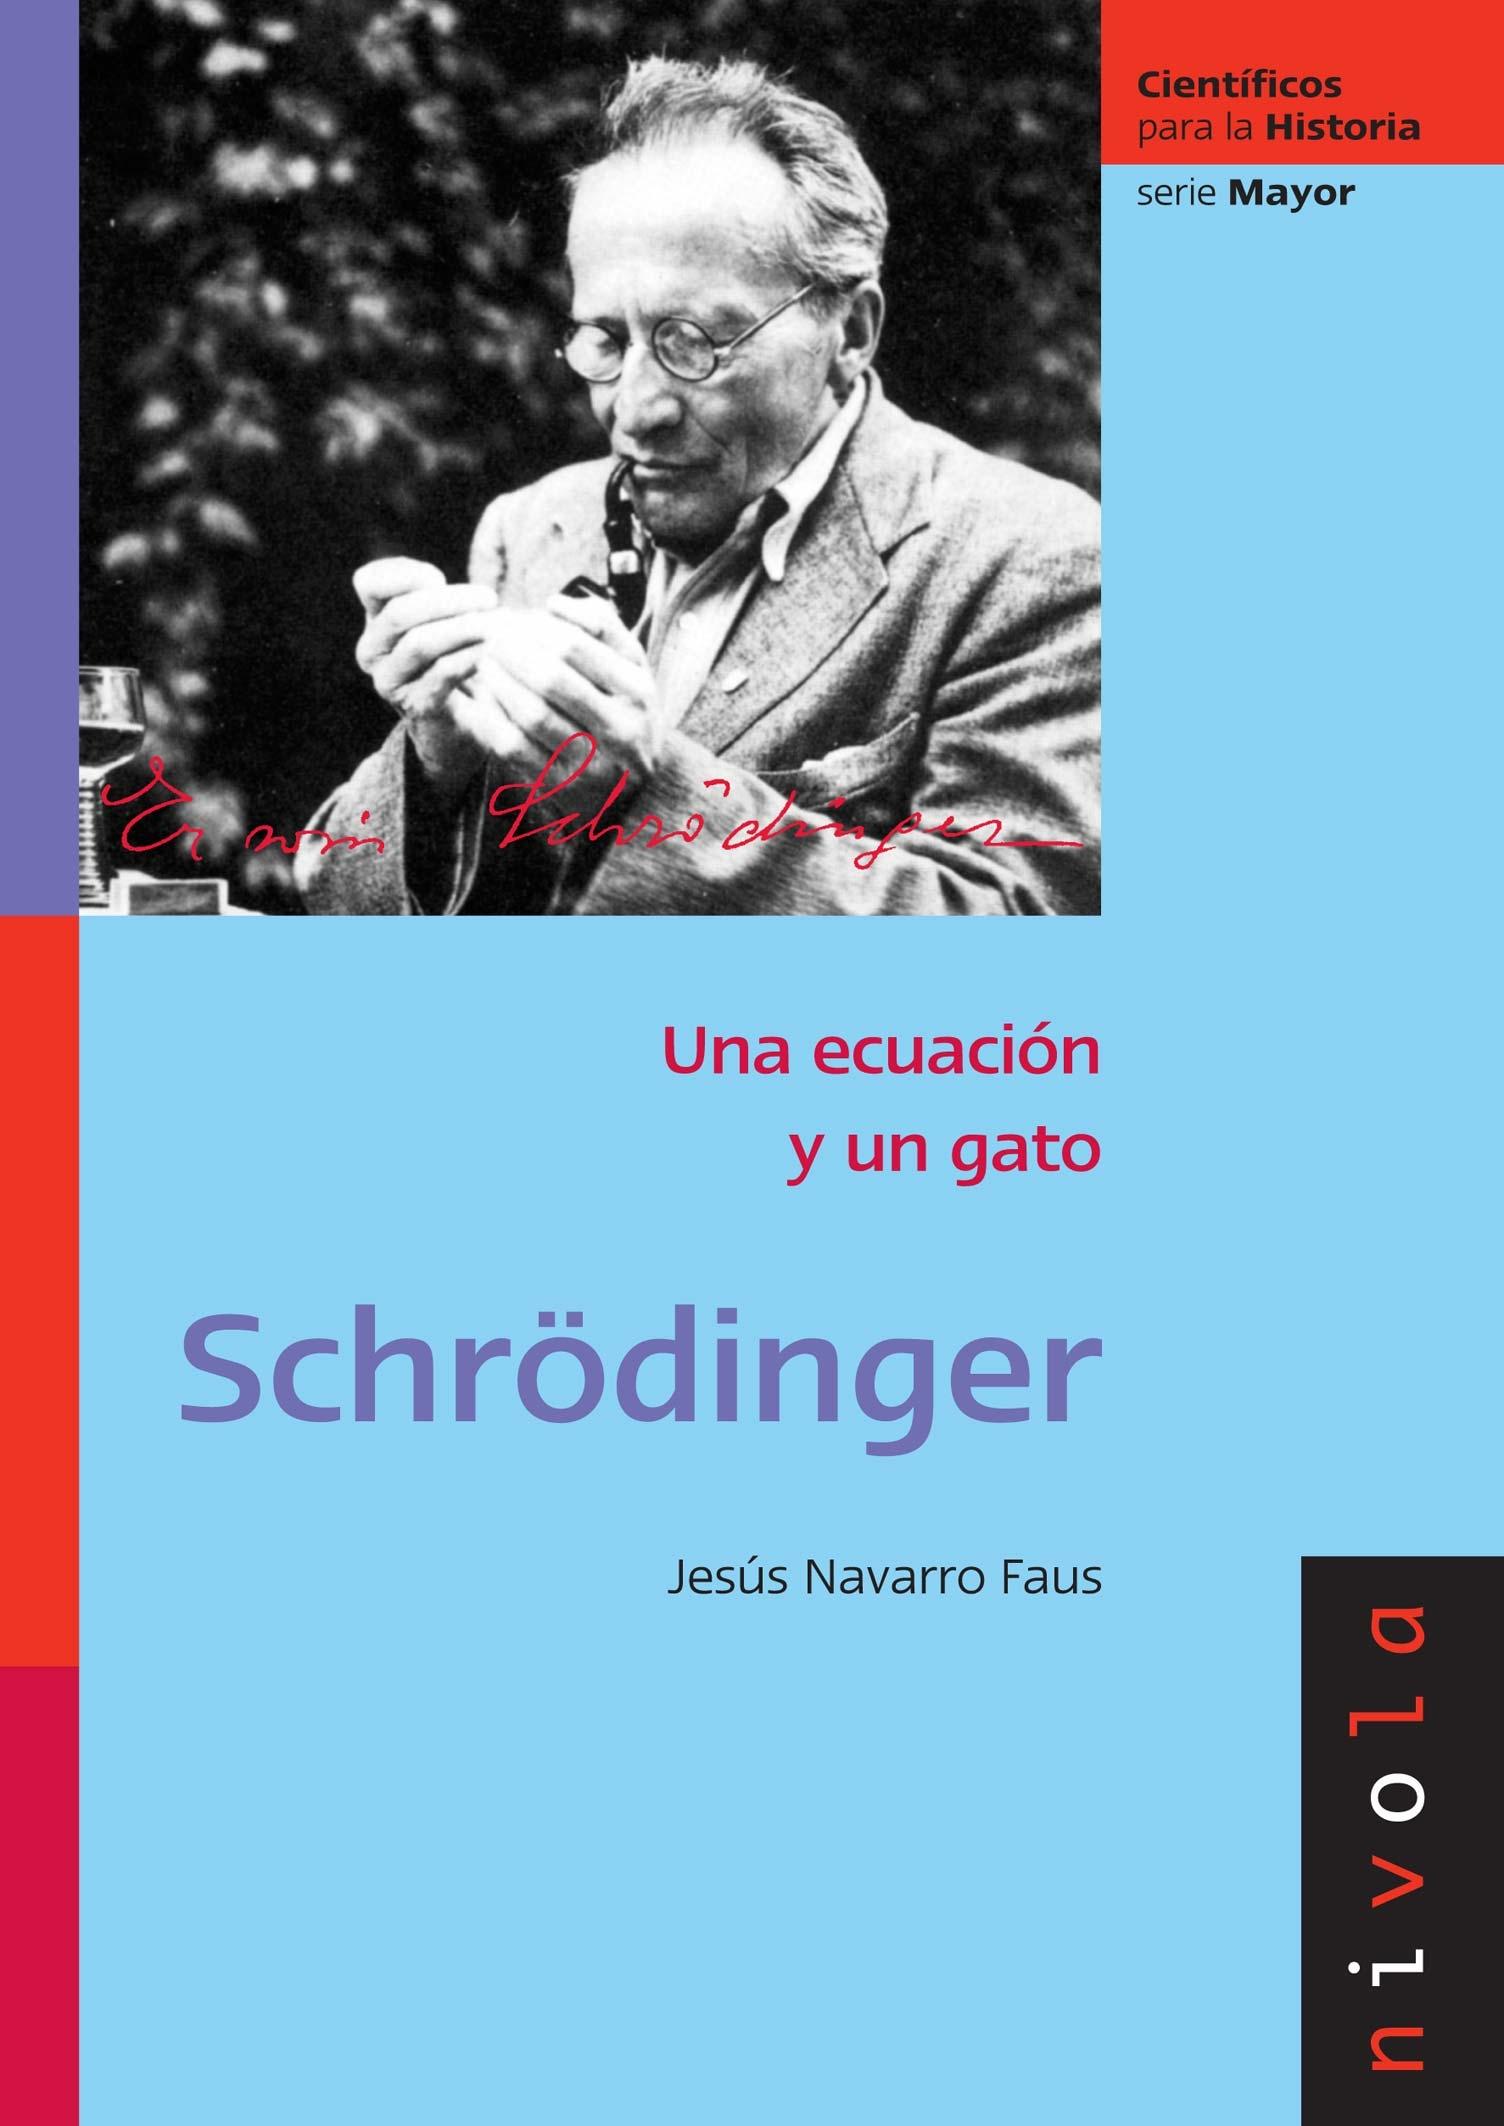 Schrödinger "Una ecuación y un gato"